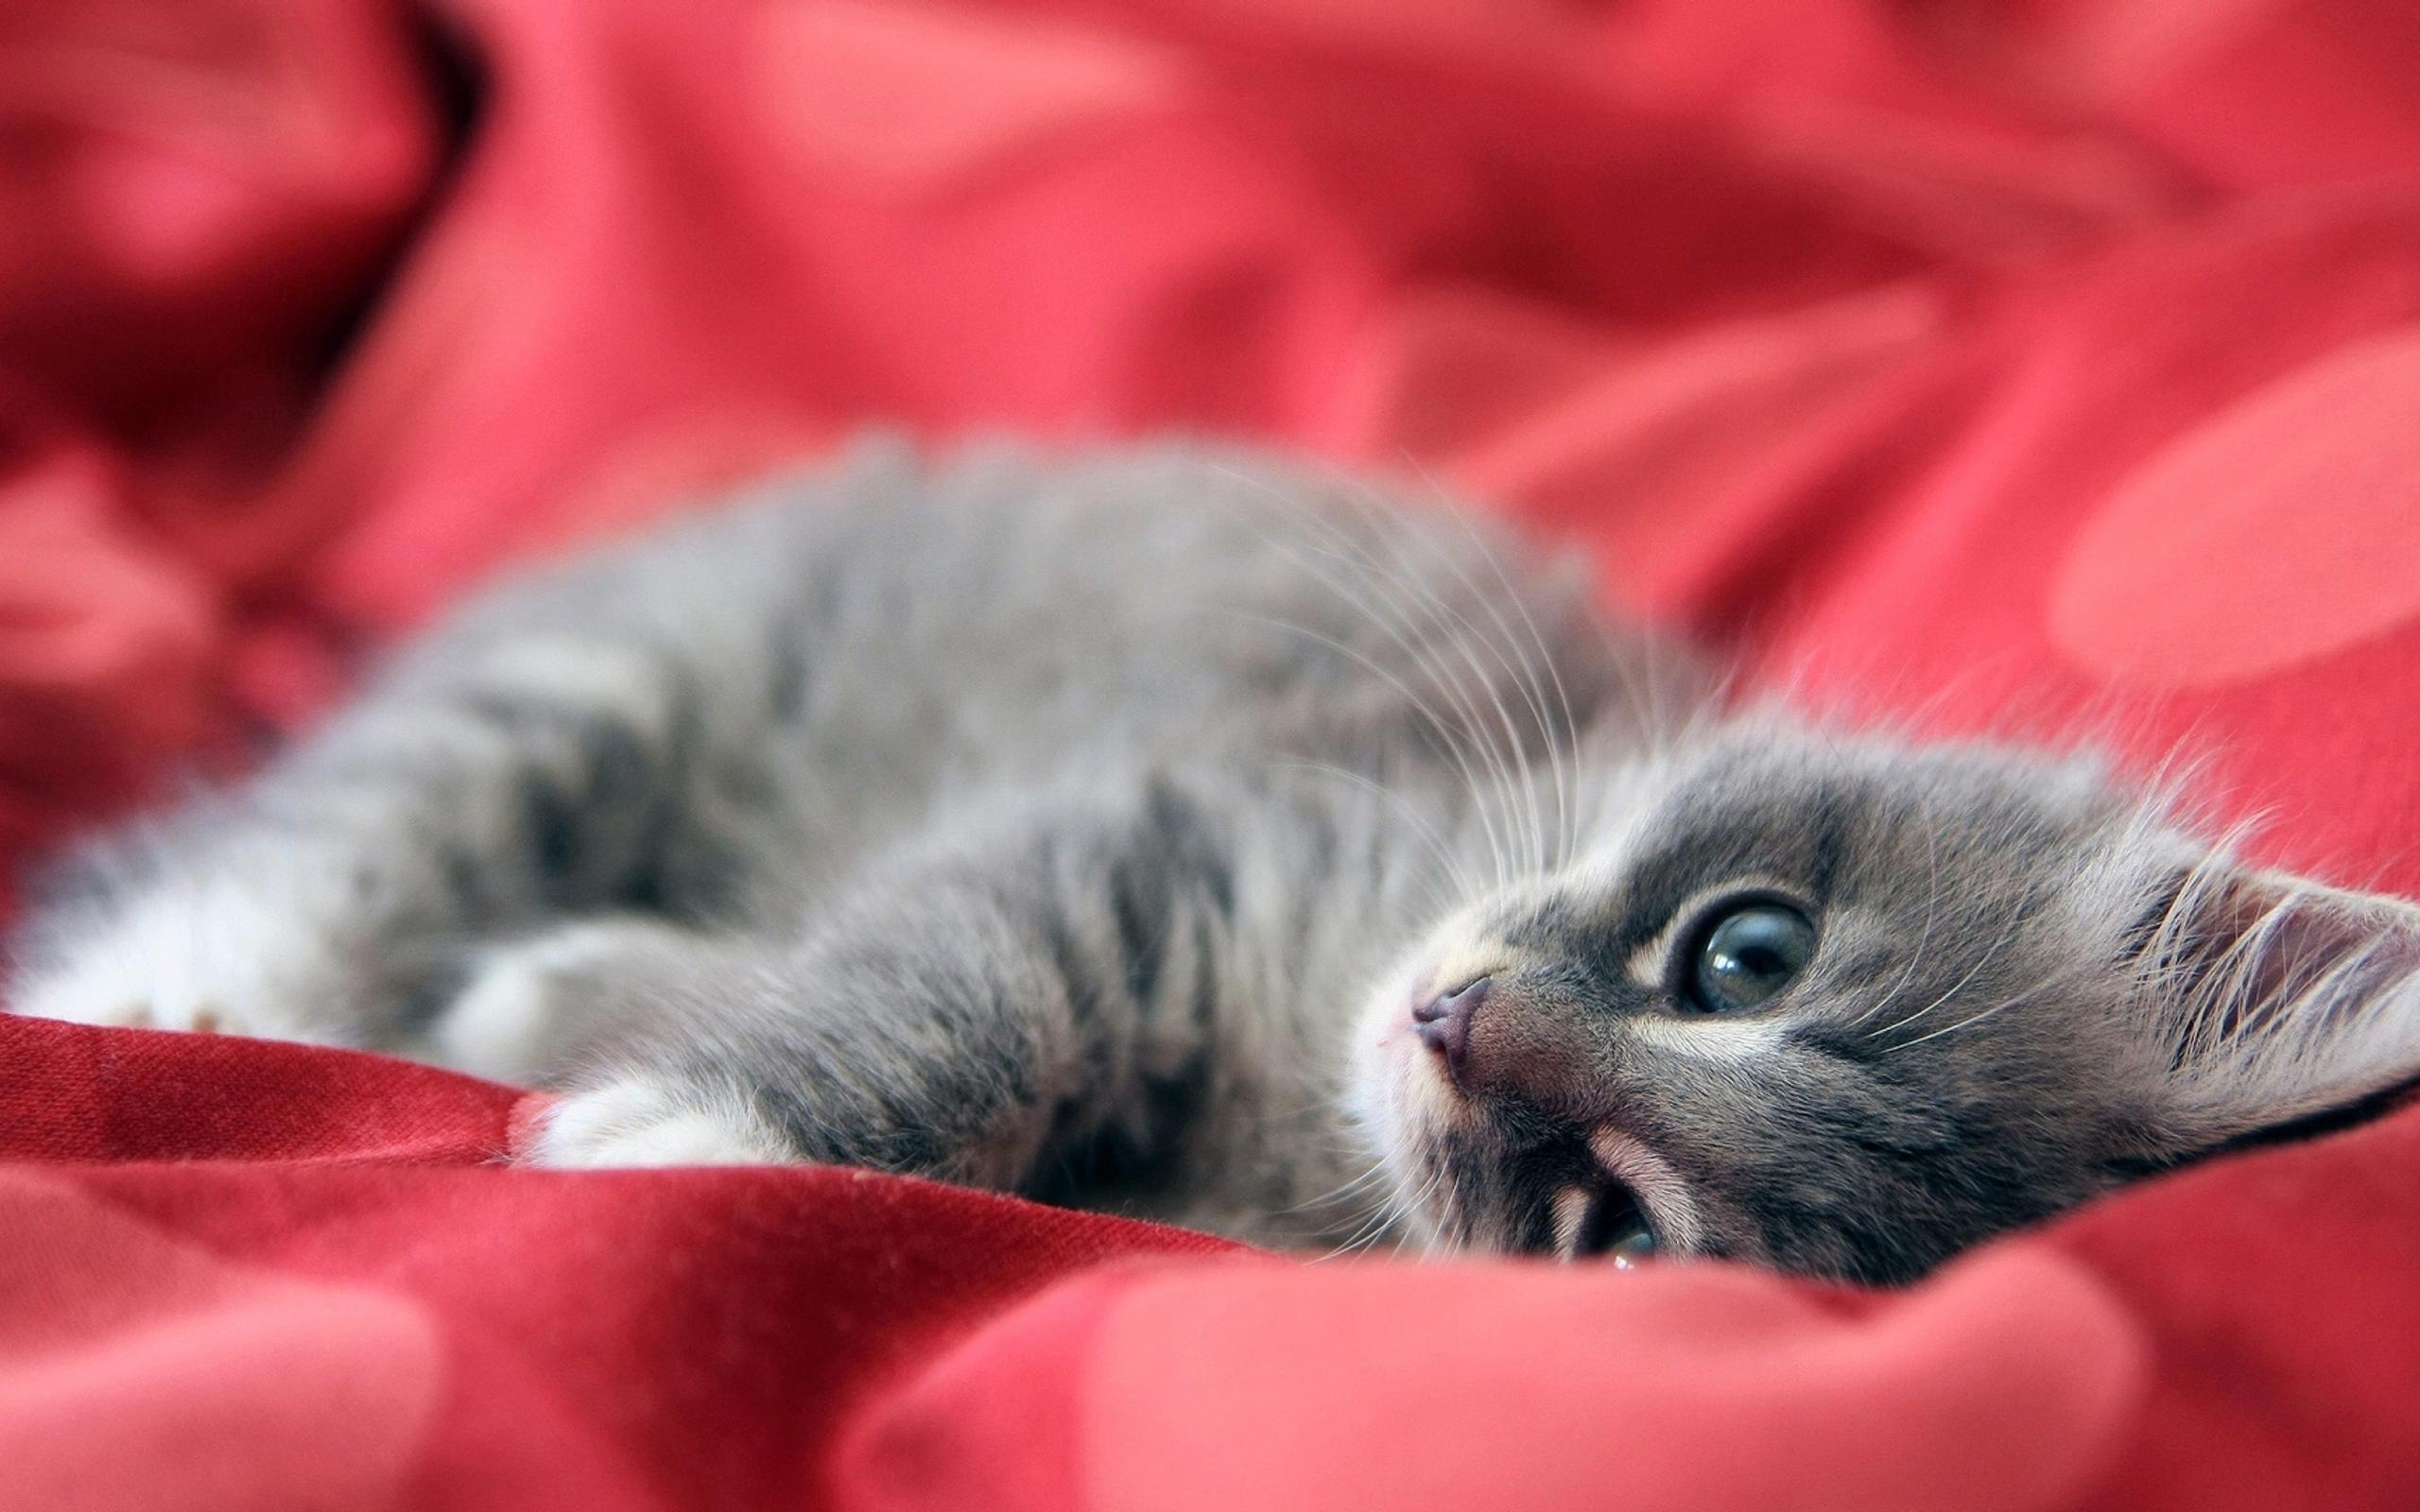 Gray kitten in a red bed - Sweet kitten